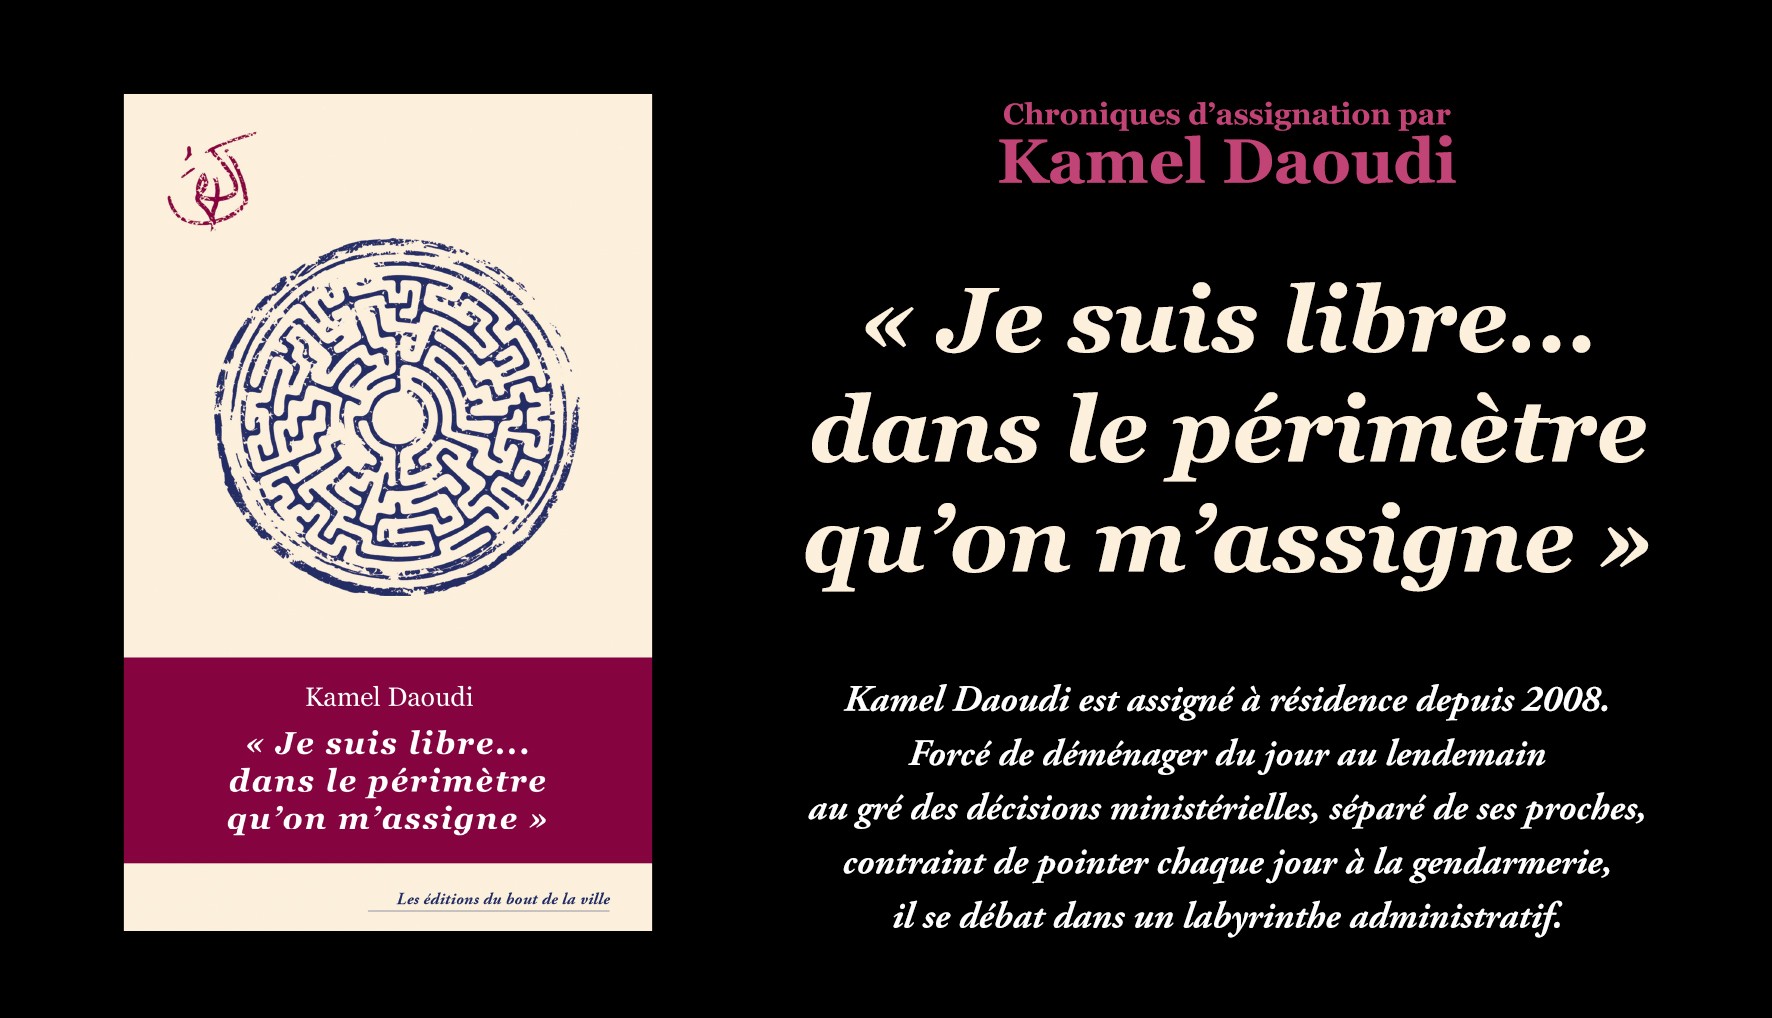 Kamel Daoudi